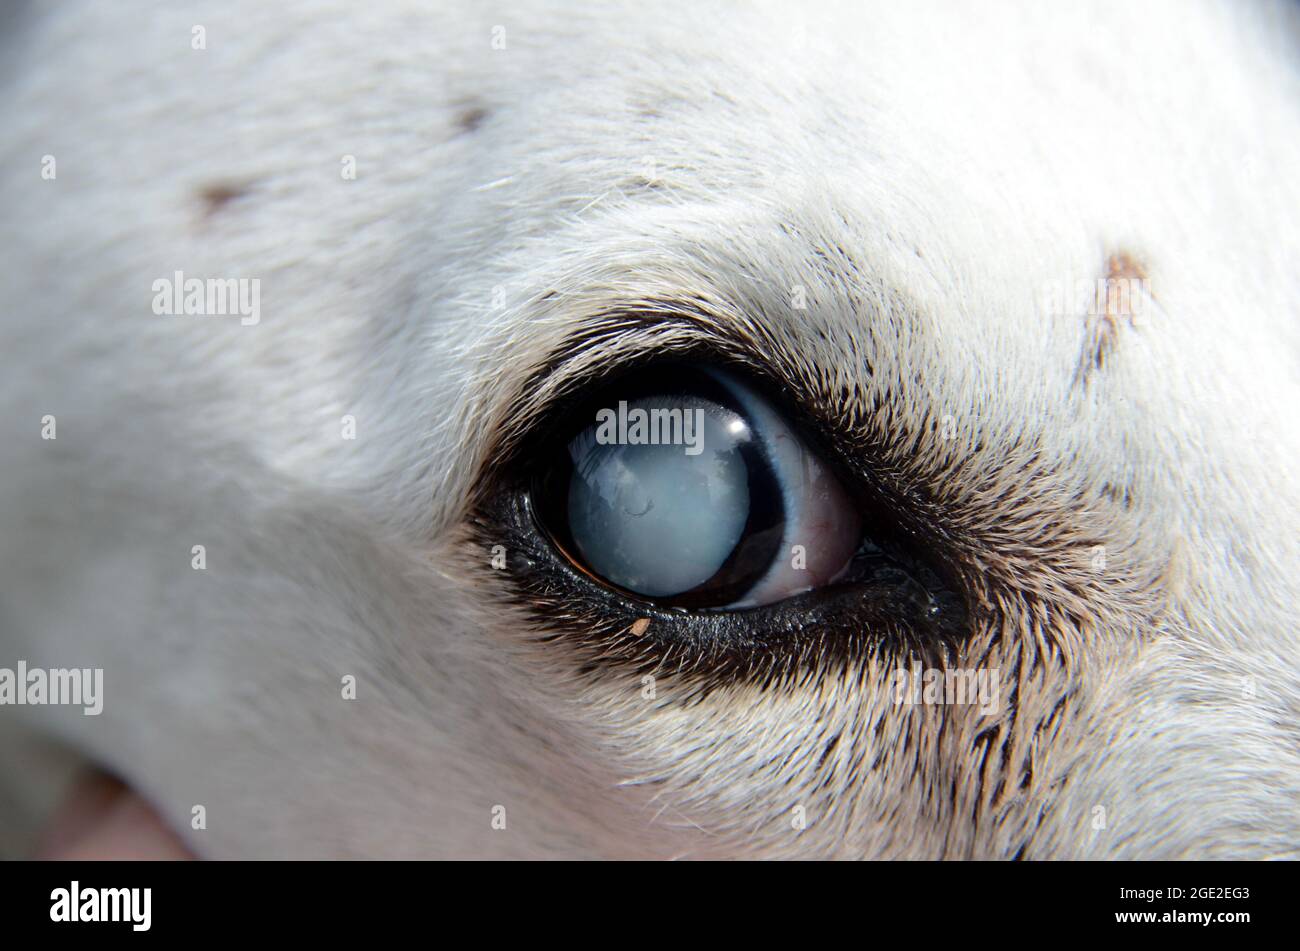 Observe el ojo de un perro afectado por la catarata Foto de stock